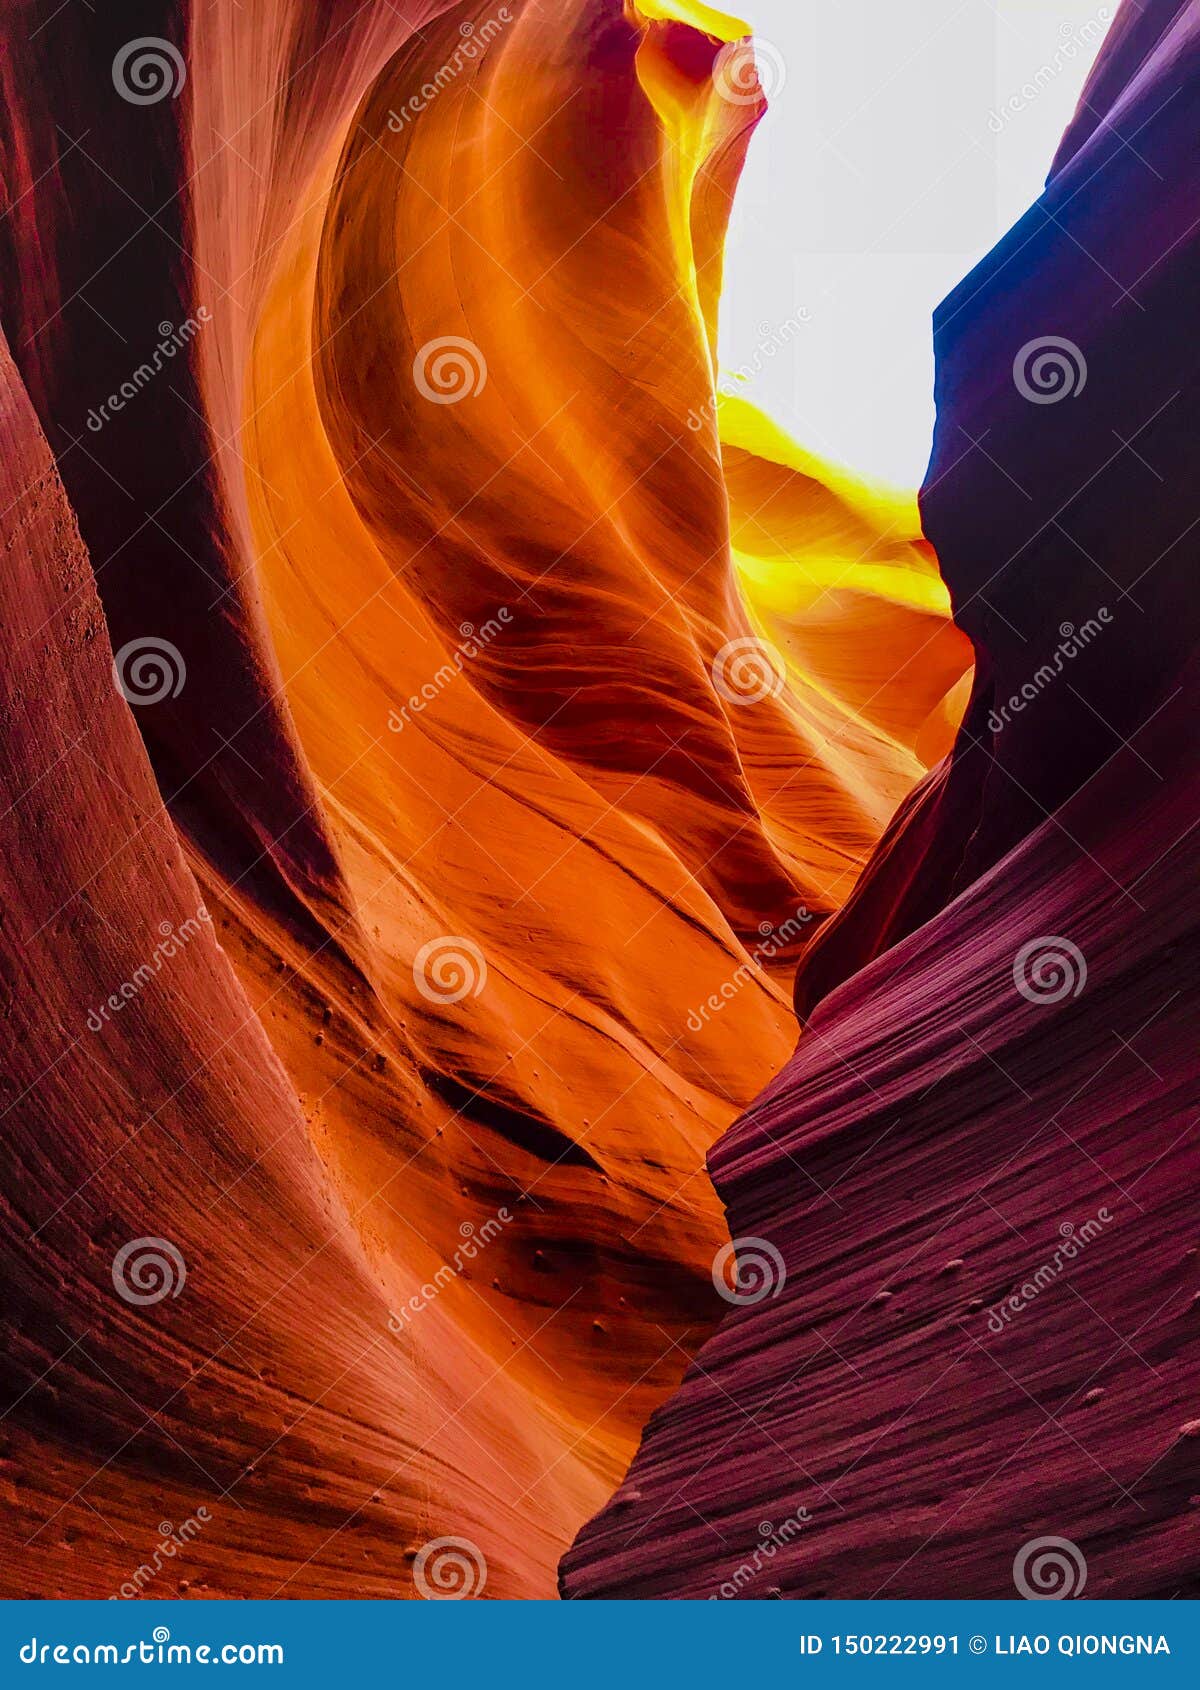 Tiro interior da mais baixa garganta do antílope Uma mais baixa garganta do antílope, é chamada Hazdistazí, ou ‘os arcos espirais da rocha pelo Navajo, são ficados situados diversas milhas da garganta superior do antílope